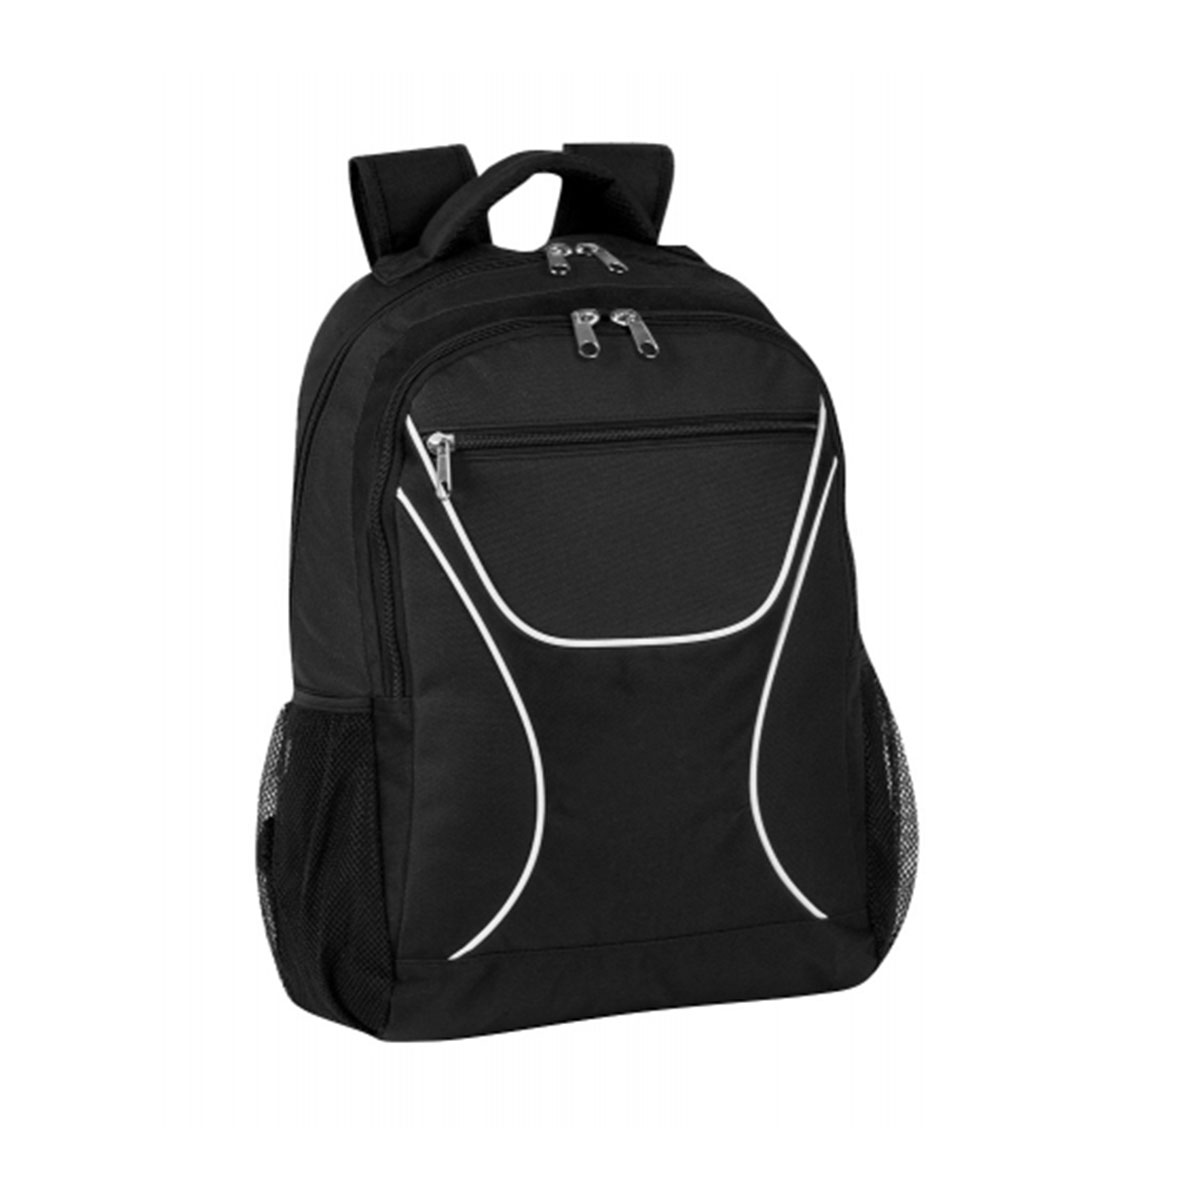 Backpack | Royal, White and Black | Branded Nylon Backpacks